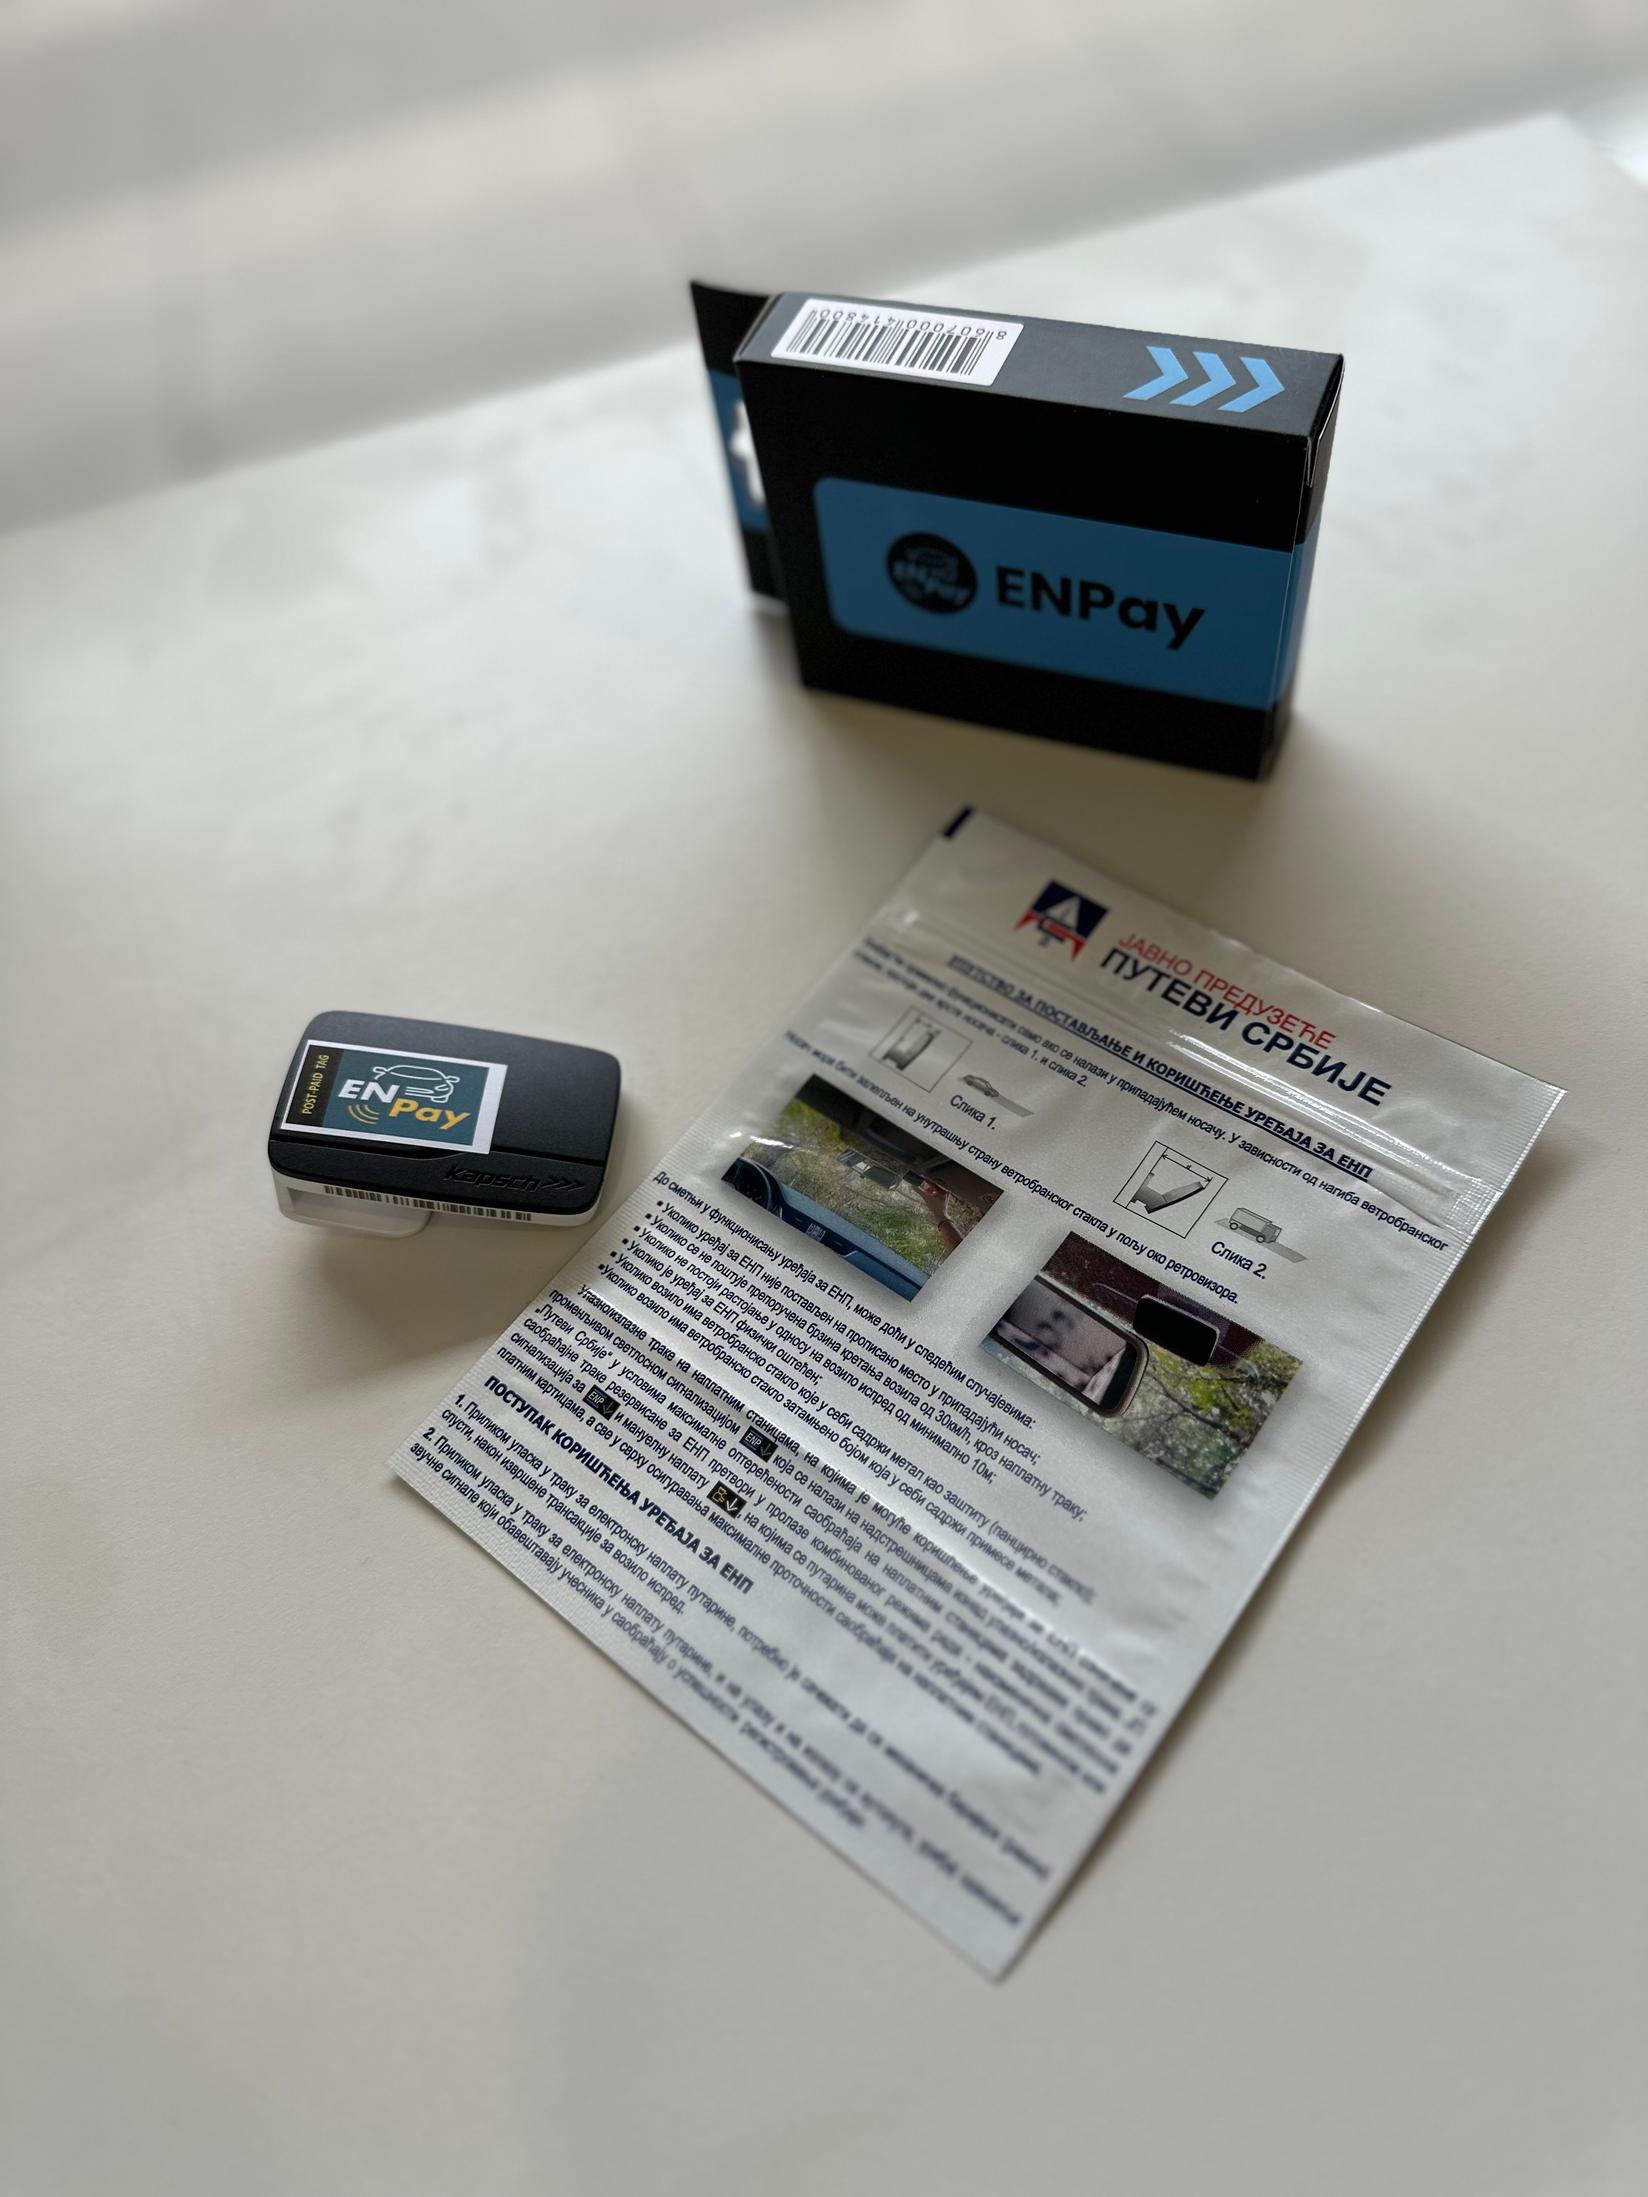 Selected image for ENPay Postpaid tag Uređaj za elektronsku naplatu putarine putem aplikacije